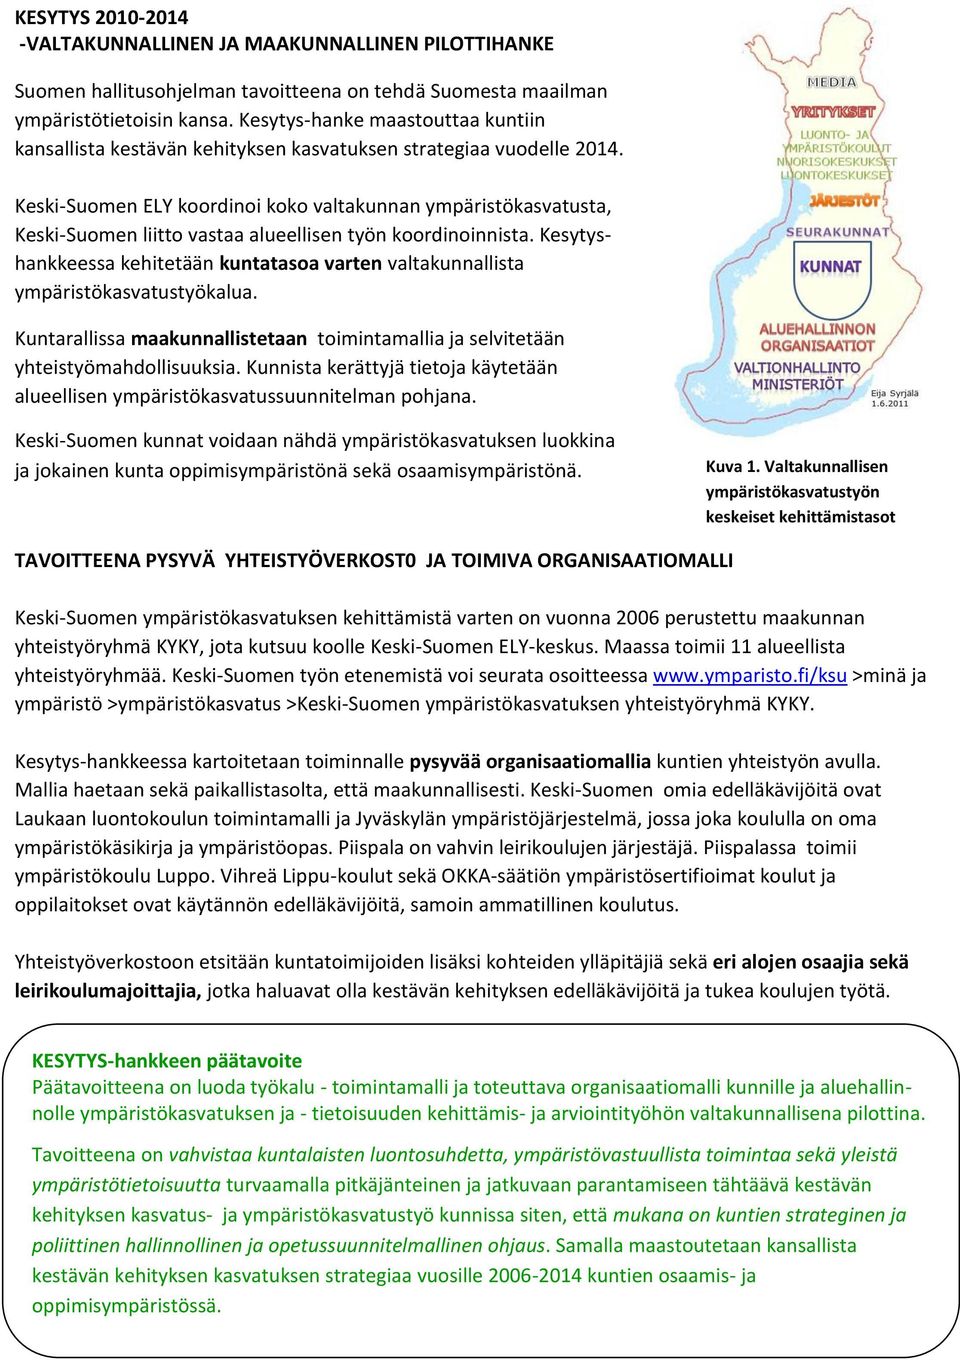 Keski-Suomen ELY koordinoi koko valtakunnan ympäristökasvatusta, Keski-Suomen liitto vastaa alueellisen työn koordinoinnista.